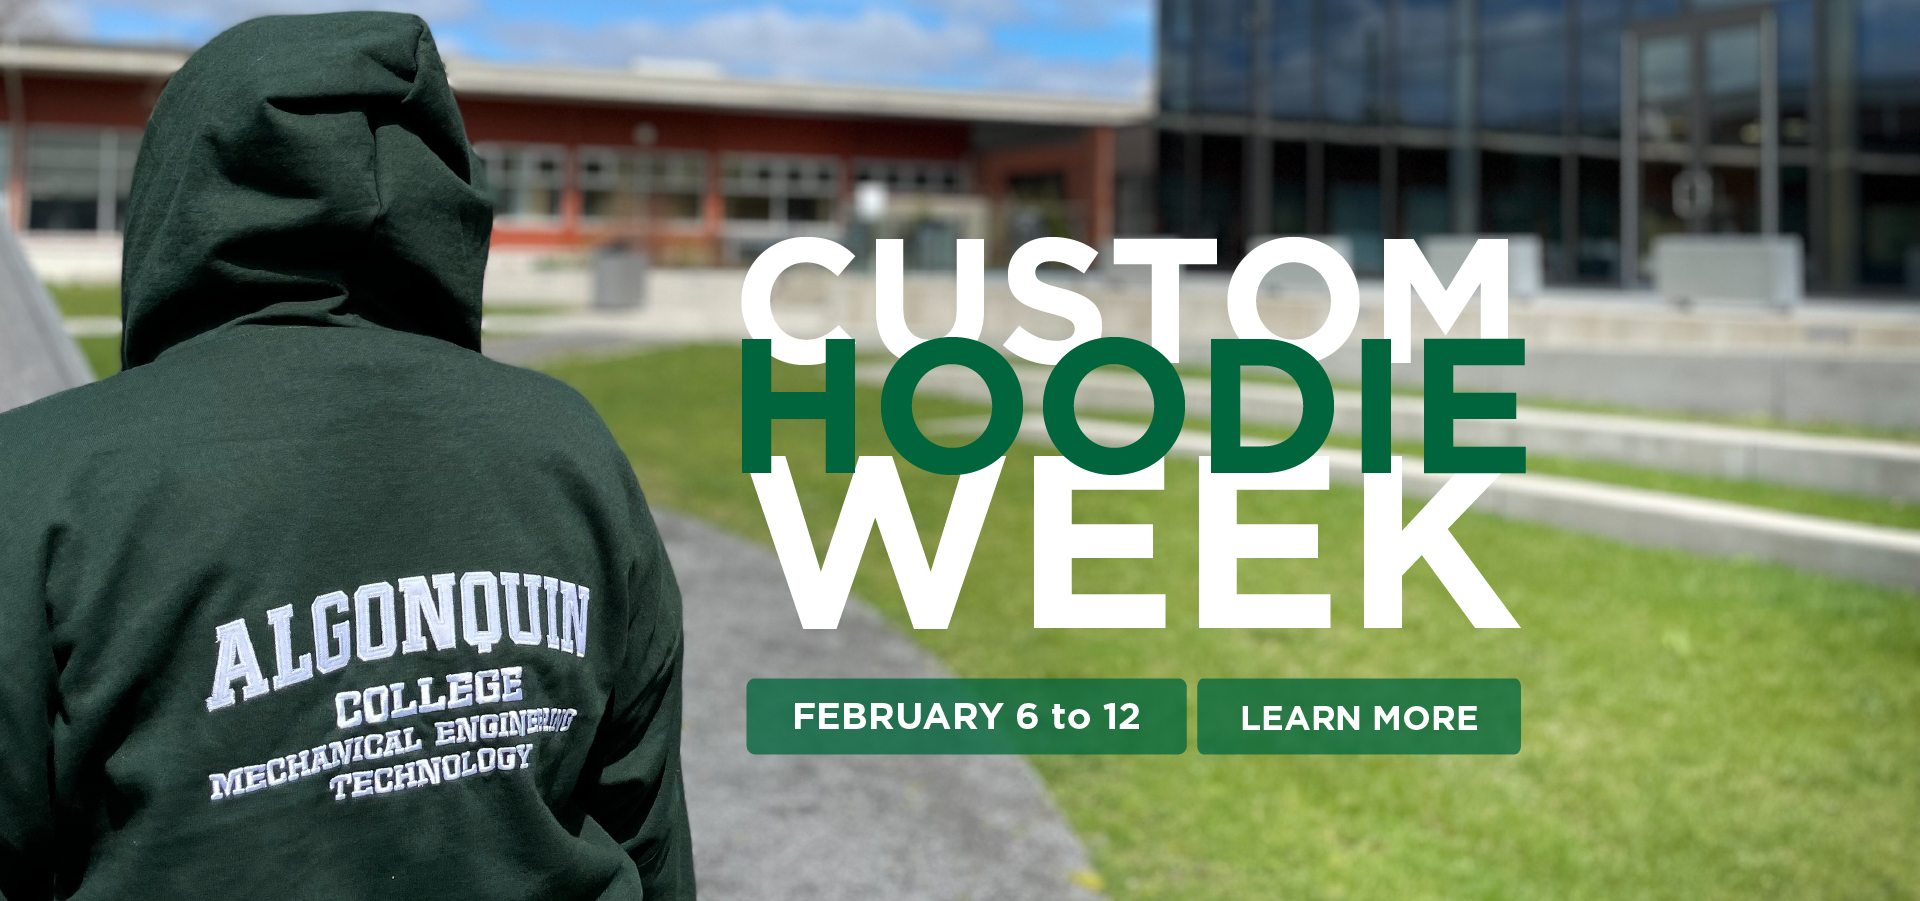 Custom Hoodie Week Feb. 6 to 12. Zip-up or Pullover. Learn More.